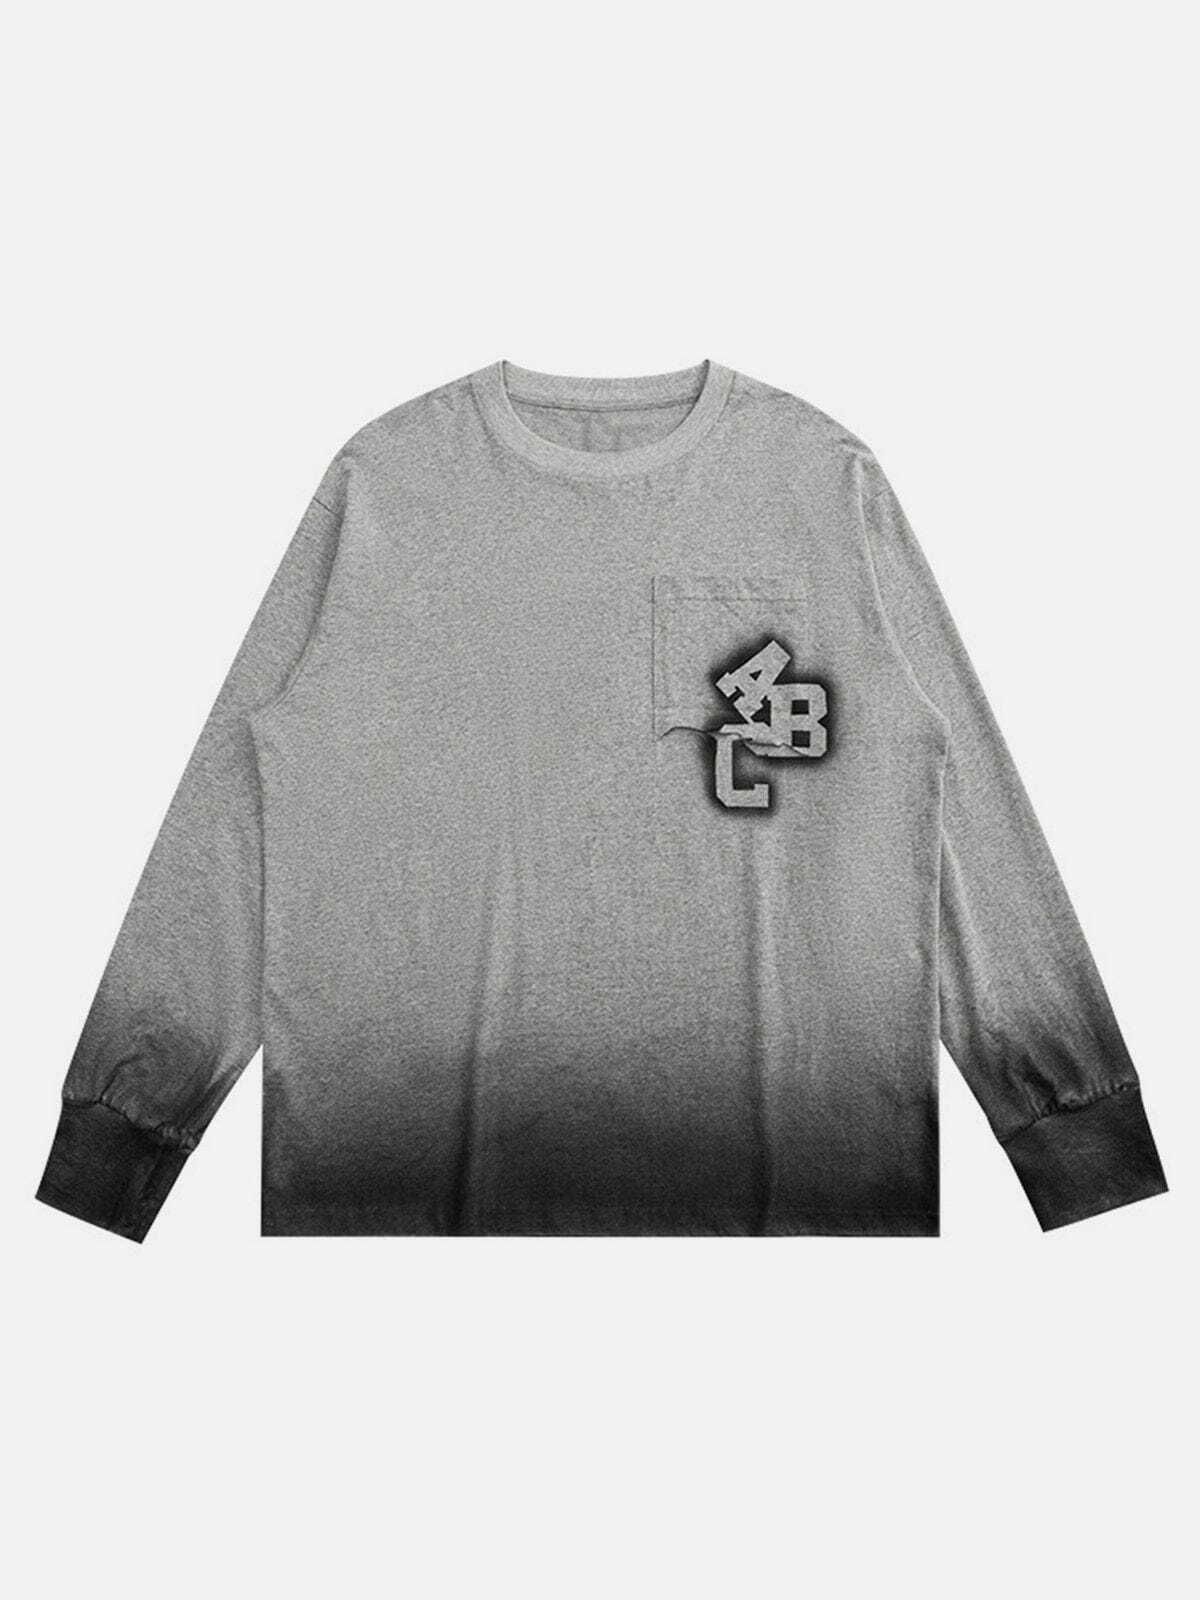 blooming gradient sweatshirt edgy streetwear essential 7211